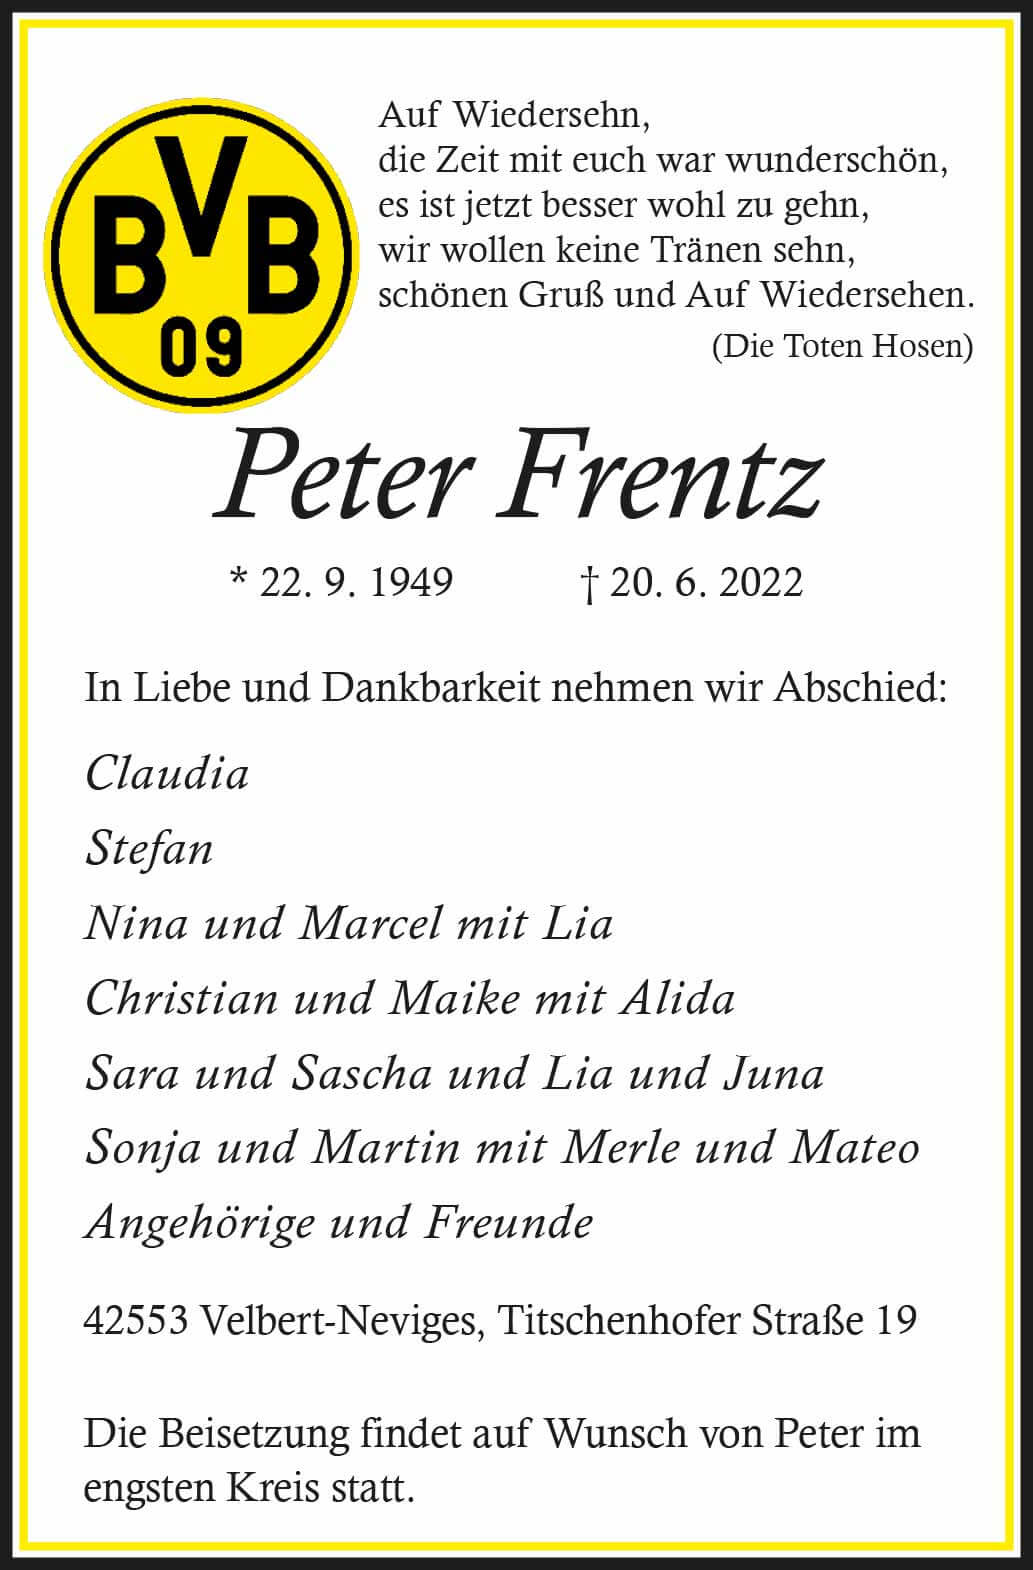 Peter Frentz † 20. 6. 2022